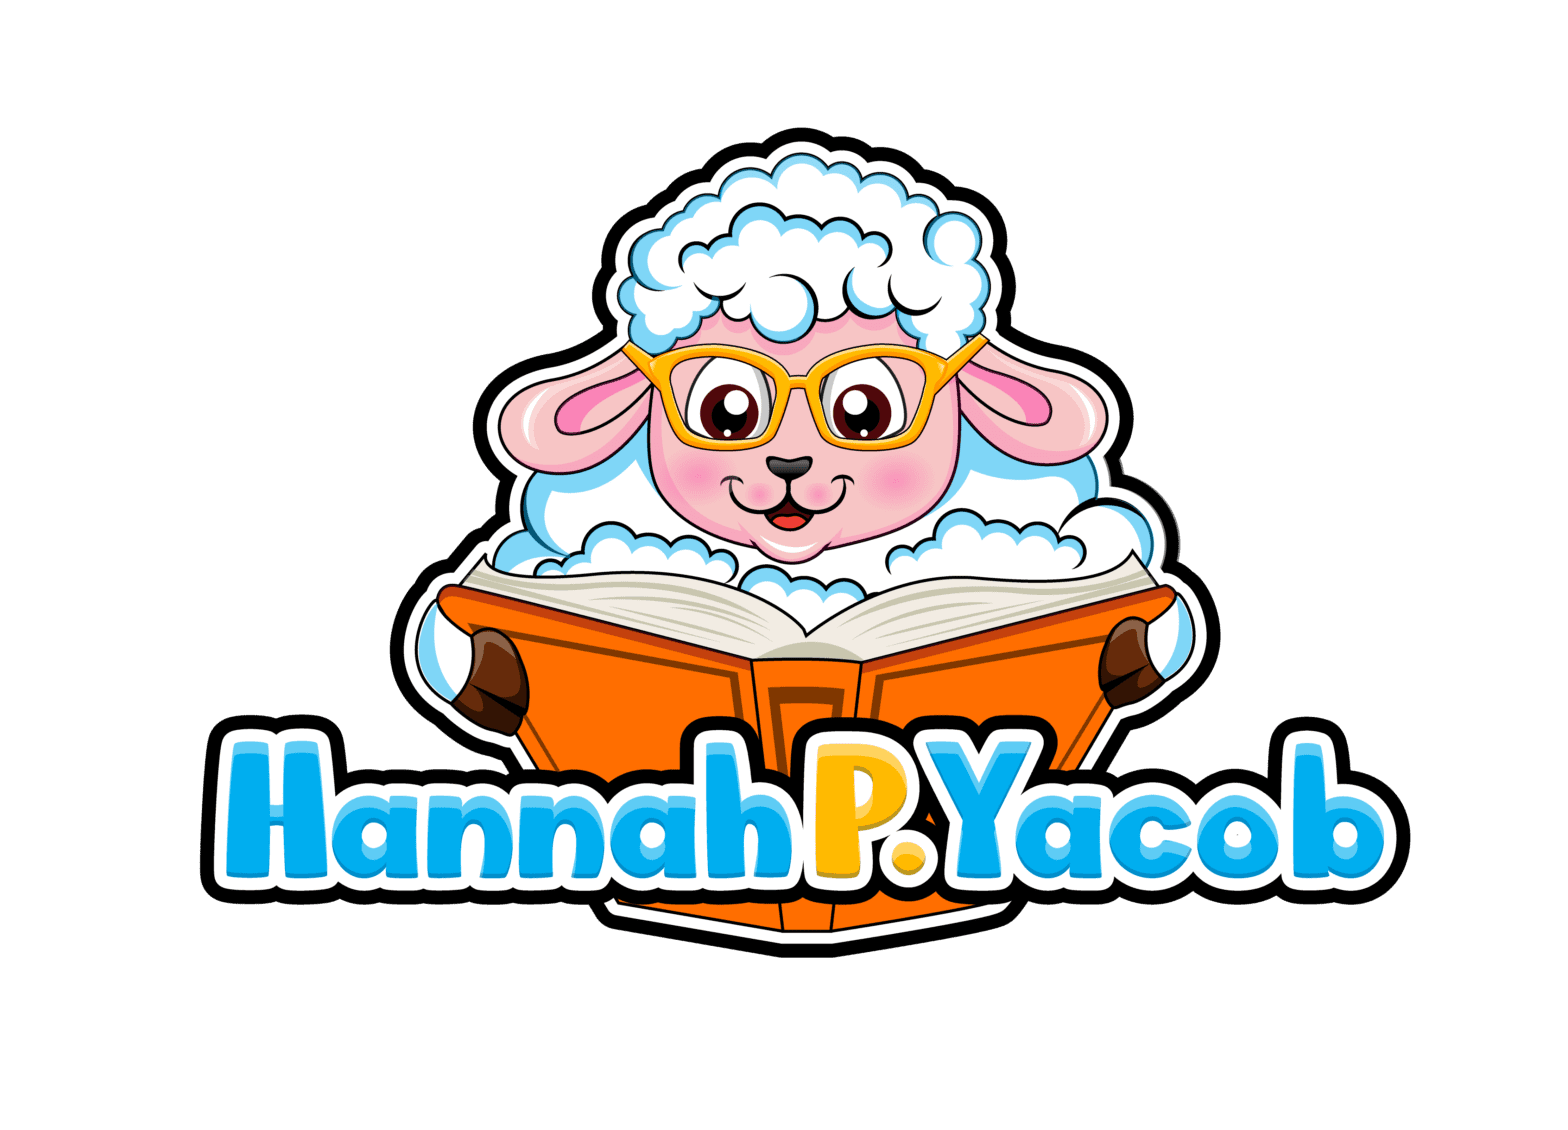 Hannah P. Yacob Author Website